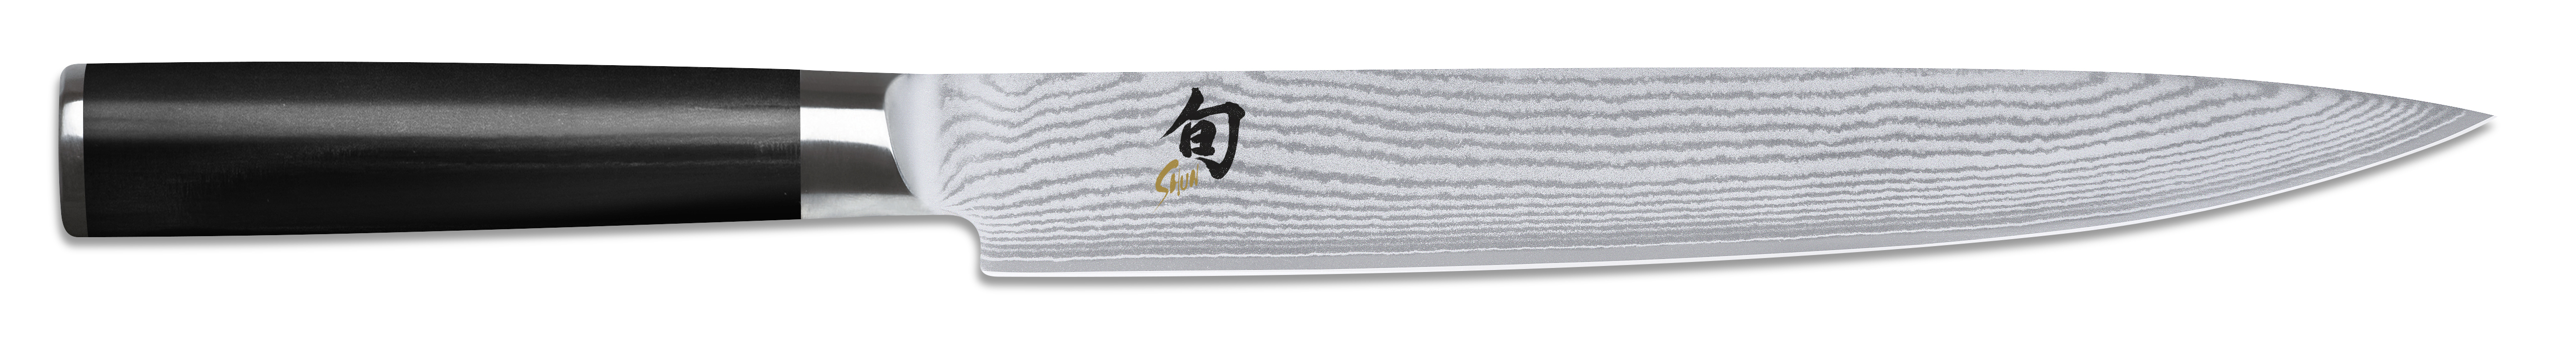 Schinkenmesser 23 cm KAI Shun Classic rostfreien Damaszener-Stahl mit 32 Lagen 